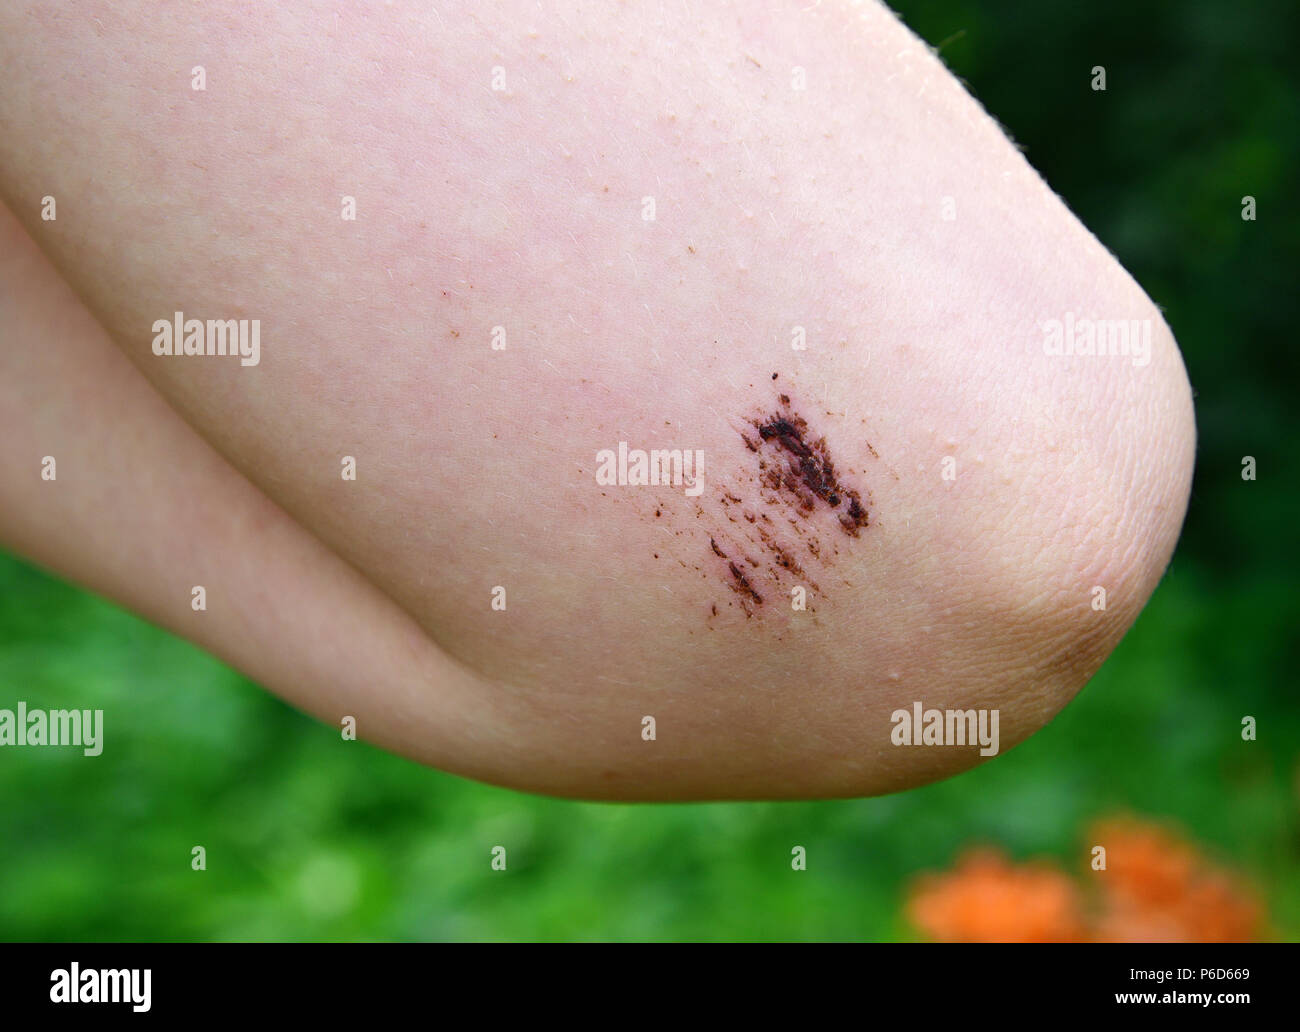 Las piernas de una adolescente con una fresca abrasión en el codo Foto de stock